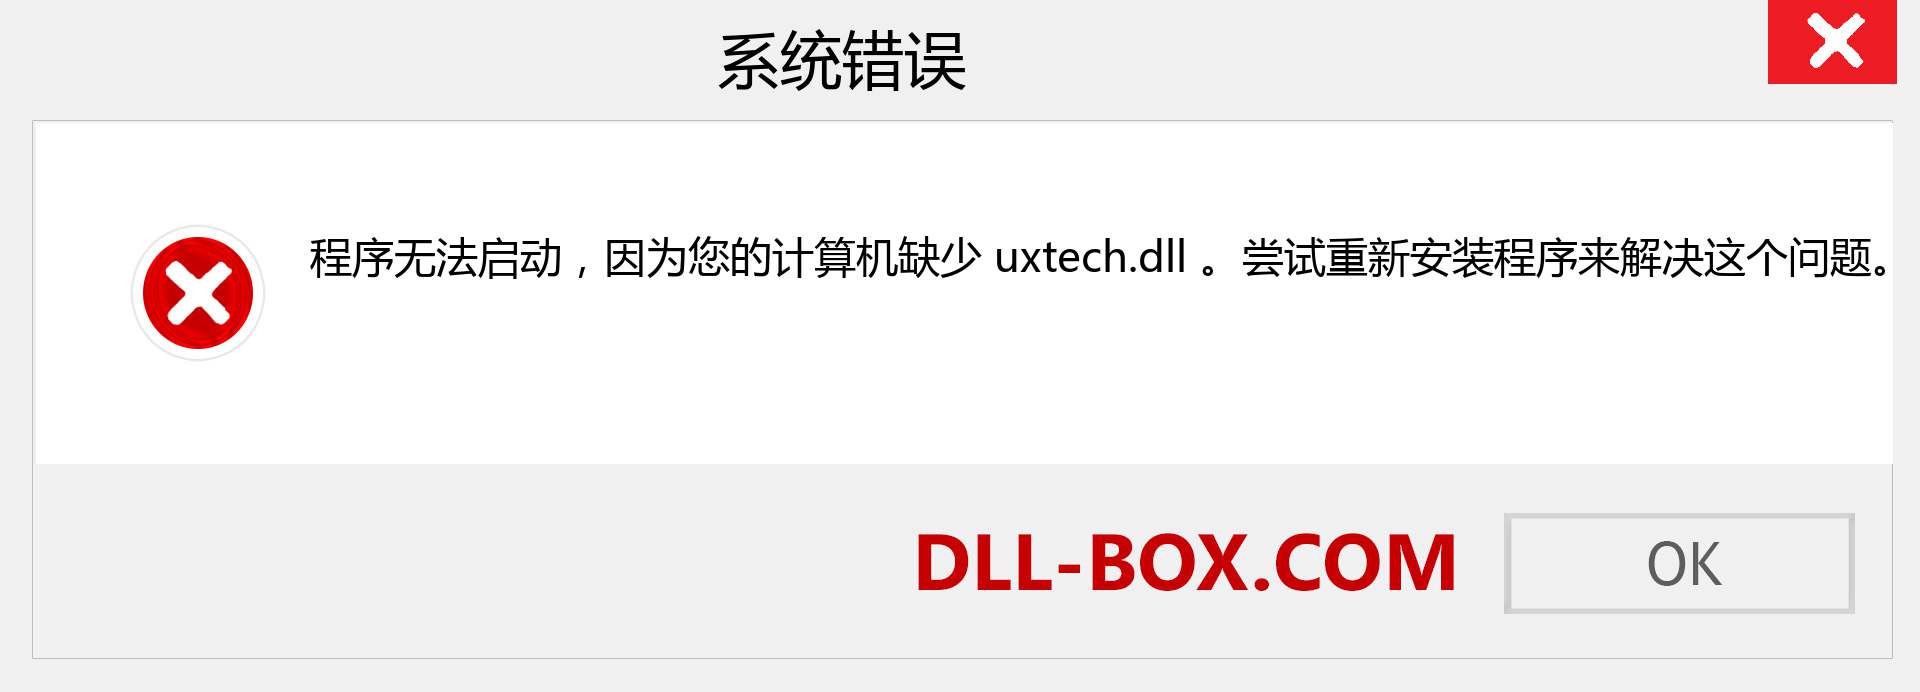 uxtech.dll 文件丢失？。 适用于 Windows 7、8、10 的下载 - 修复 Windows、照片、图像上的 uxtech dll 丢失错误